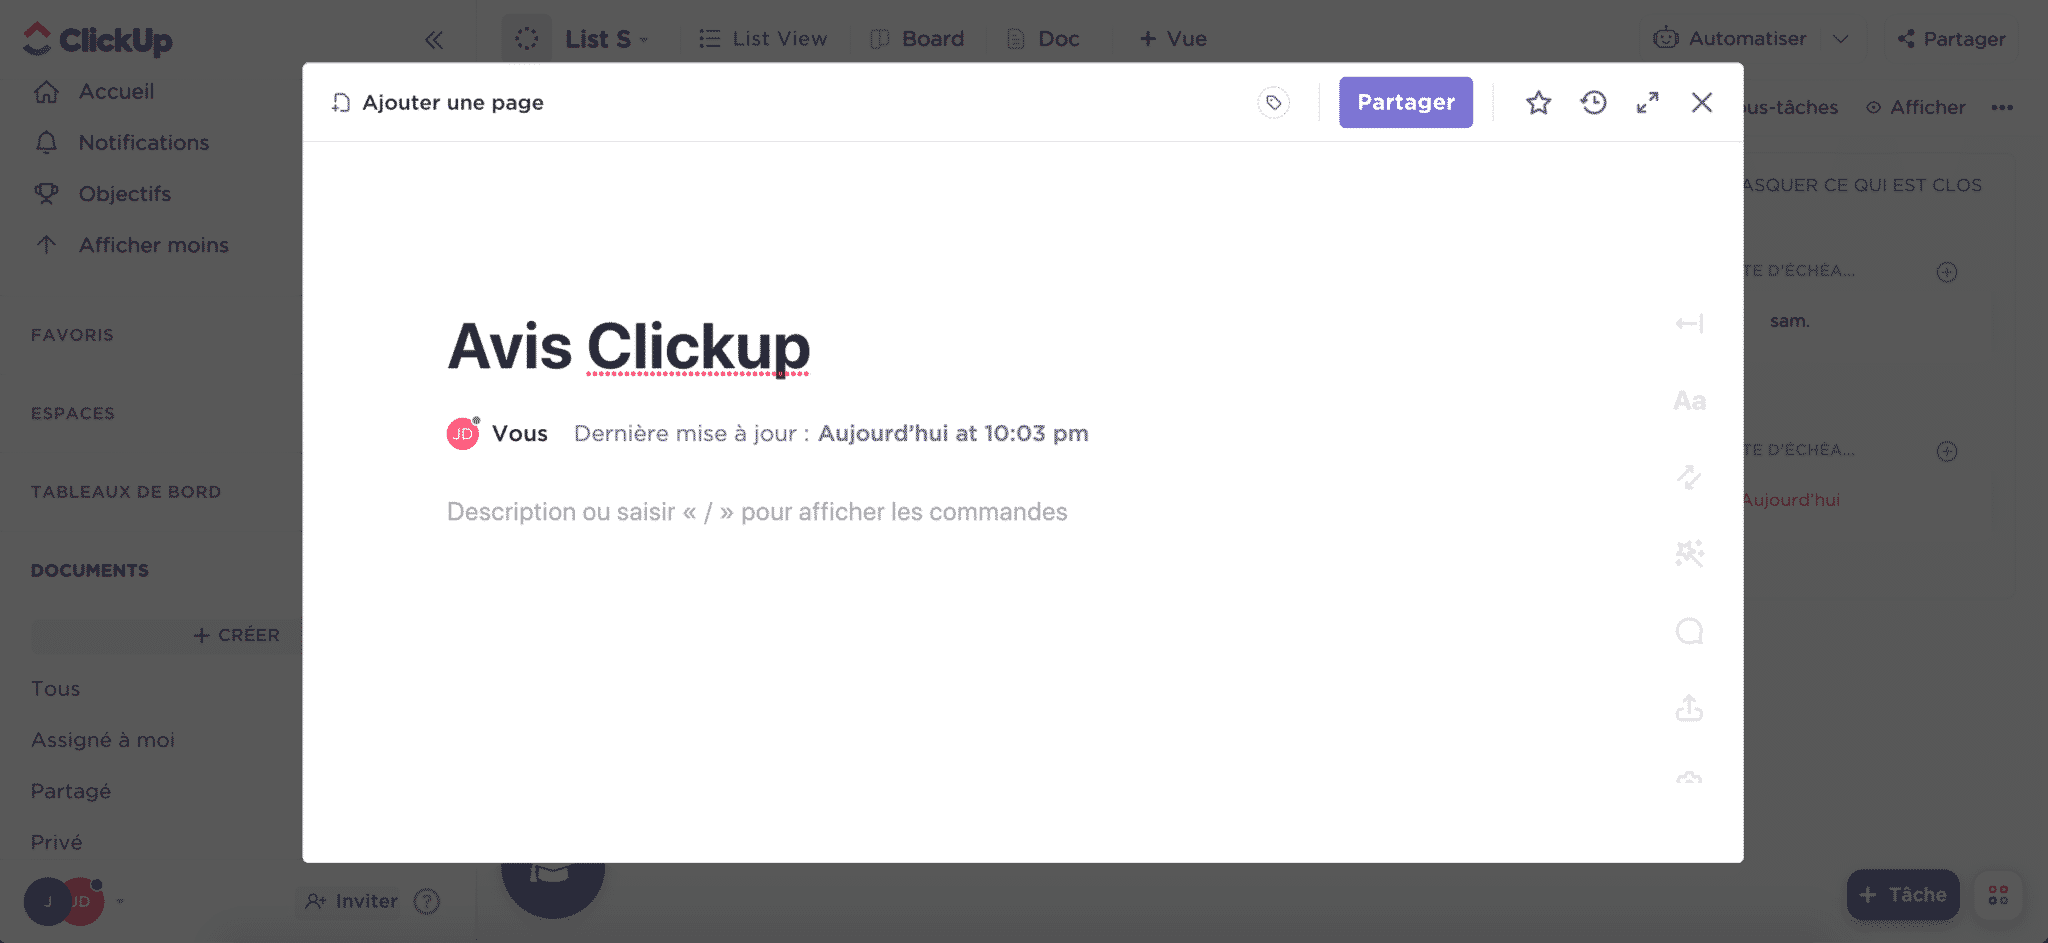 clickup-avis-documents